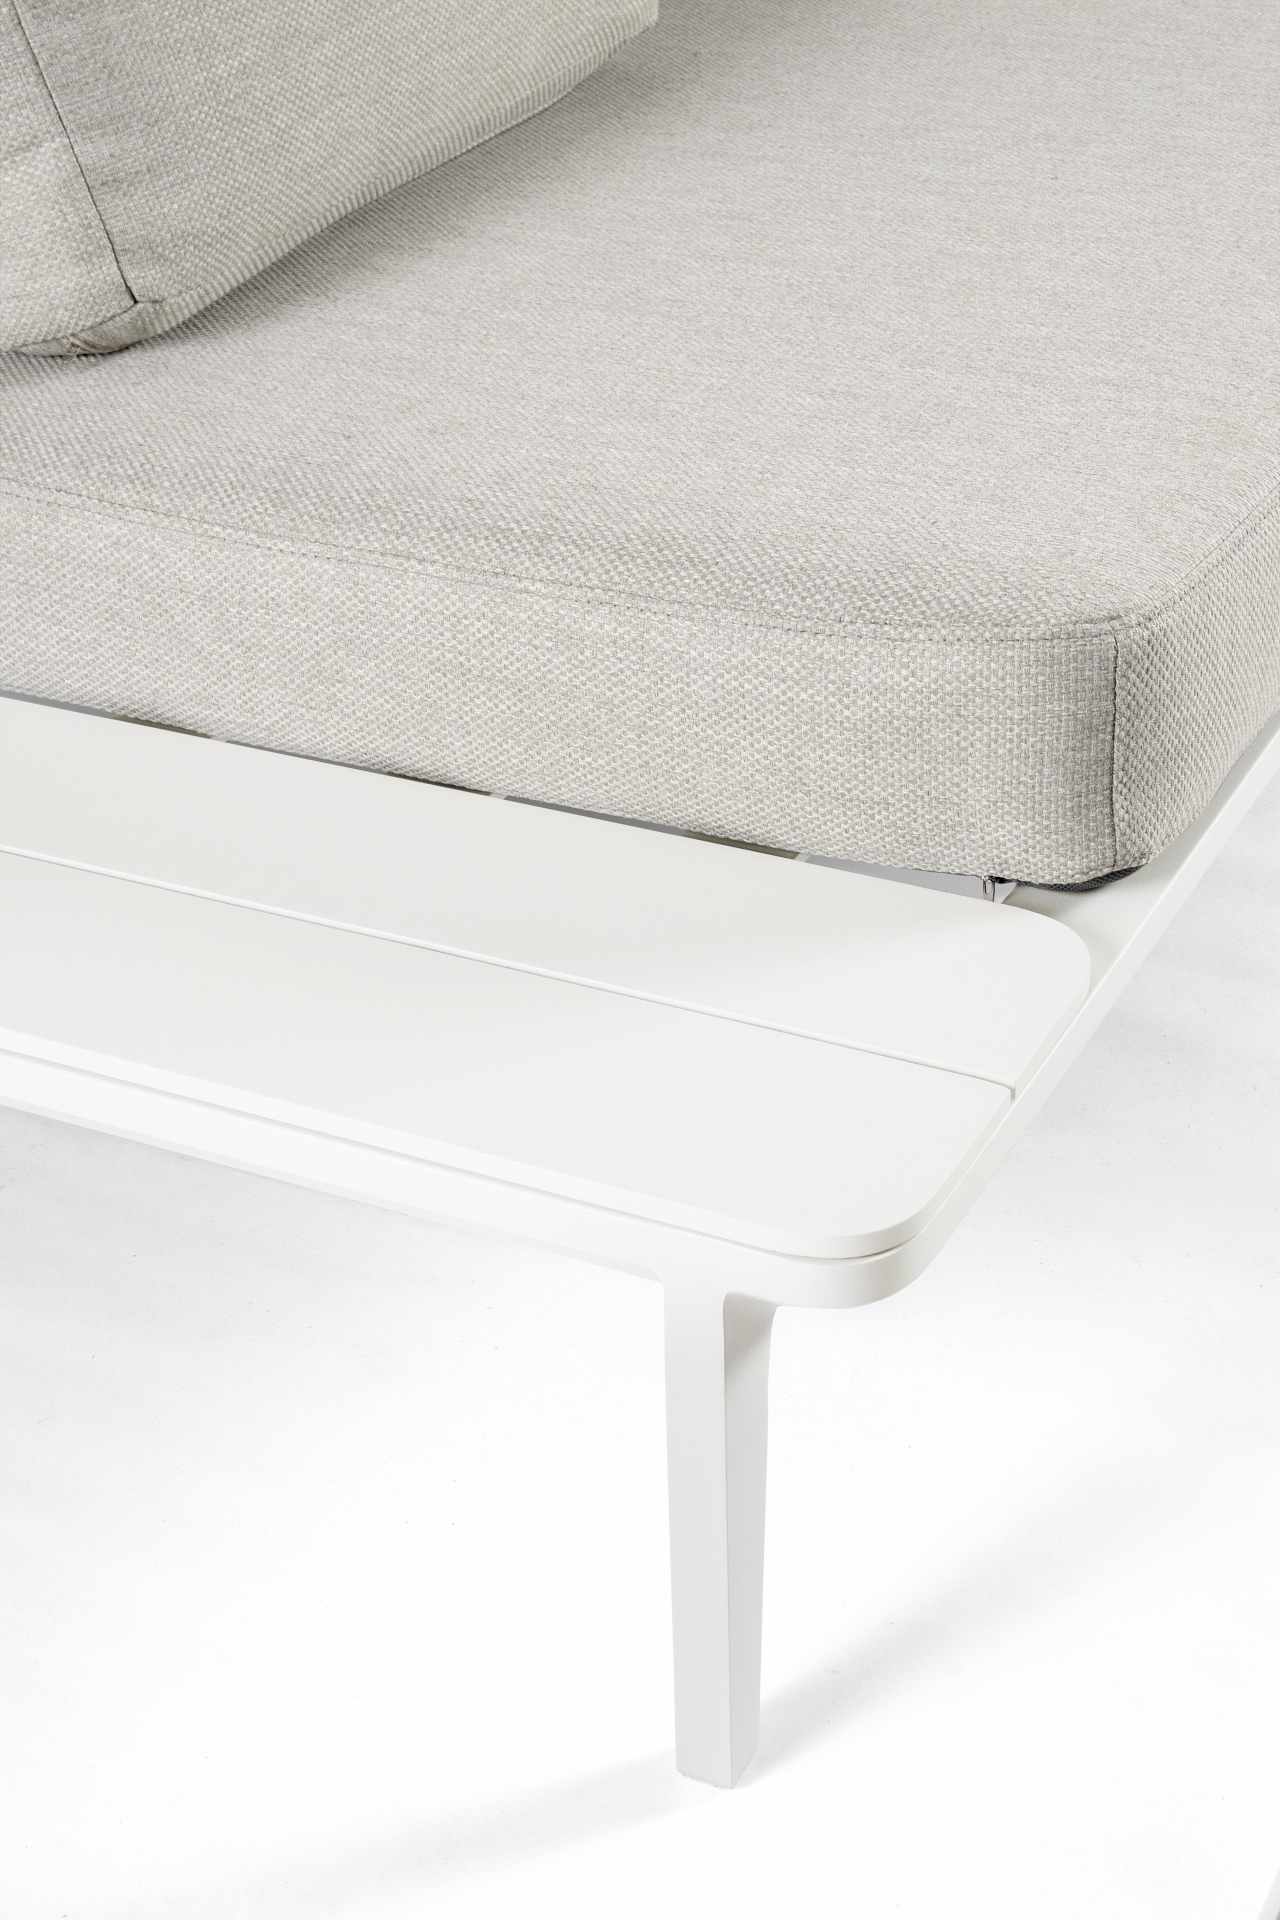 Das Gartensofa Matrix überzeugt mit seinem modernen Design. Gefertigt wurde es aus Olefin-Stoff, welcher einen grauen Farbton besitzt. Das Gestell ist aus Aluminium und hat eine weiße Farbe. Das Sofa verfügt über eine Sitzhöhe von 40 cm und ist für den Ou